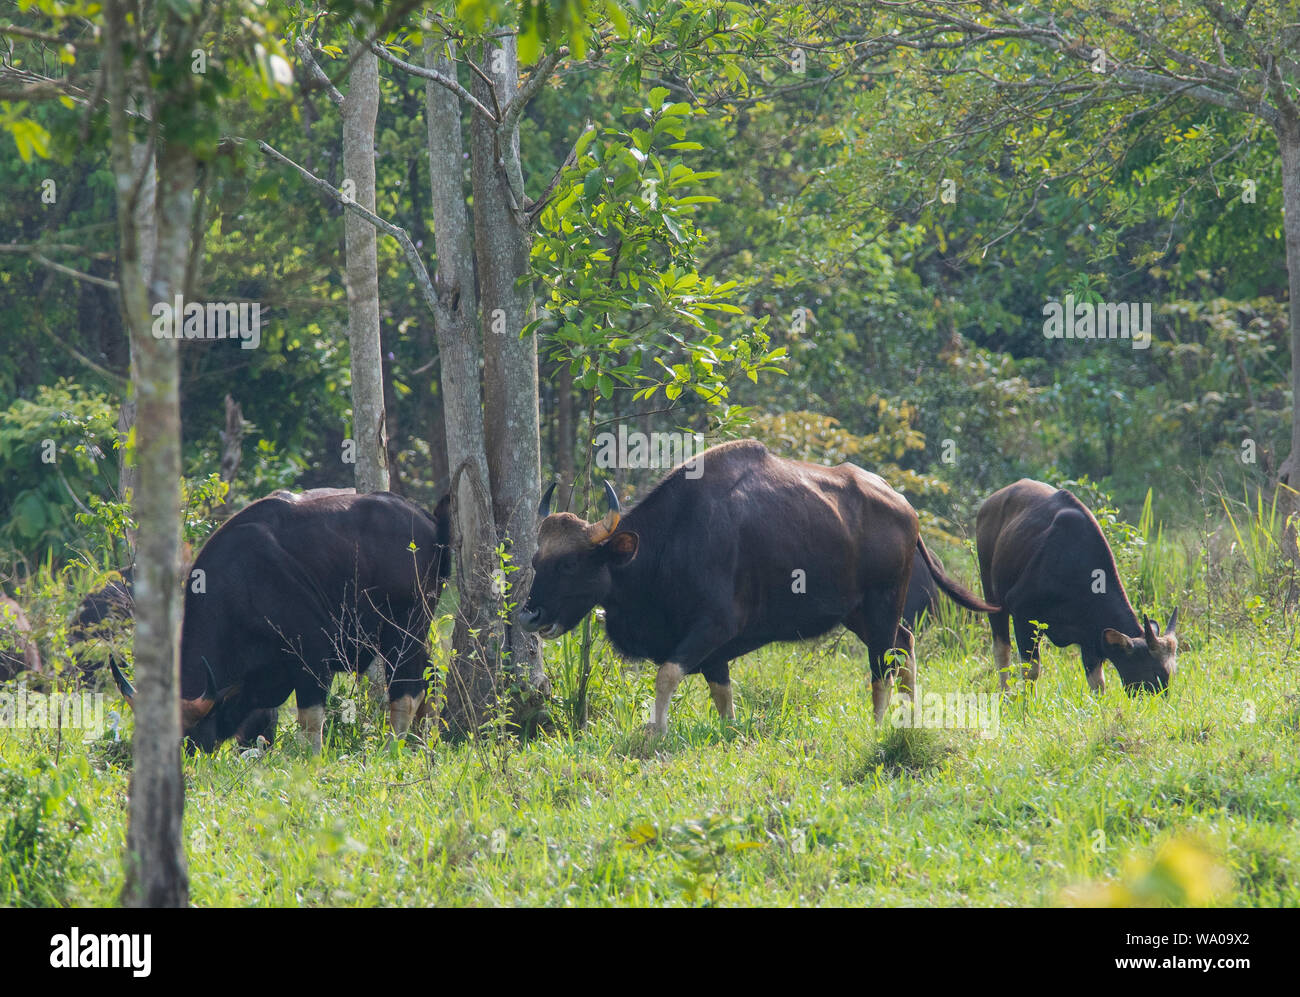 Wild Gaur or Indian bison, Bos gaurus at Kui Buri NP Thailand Stock Photo